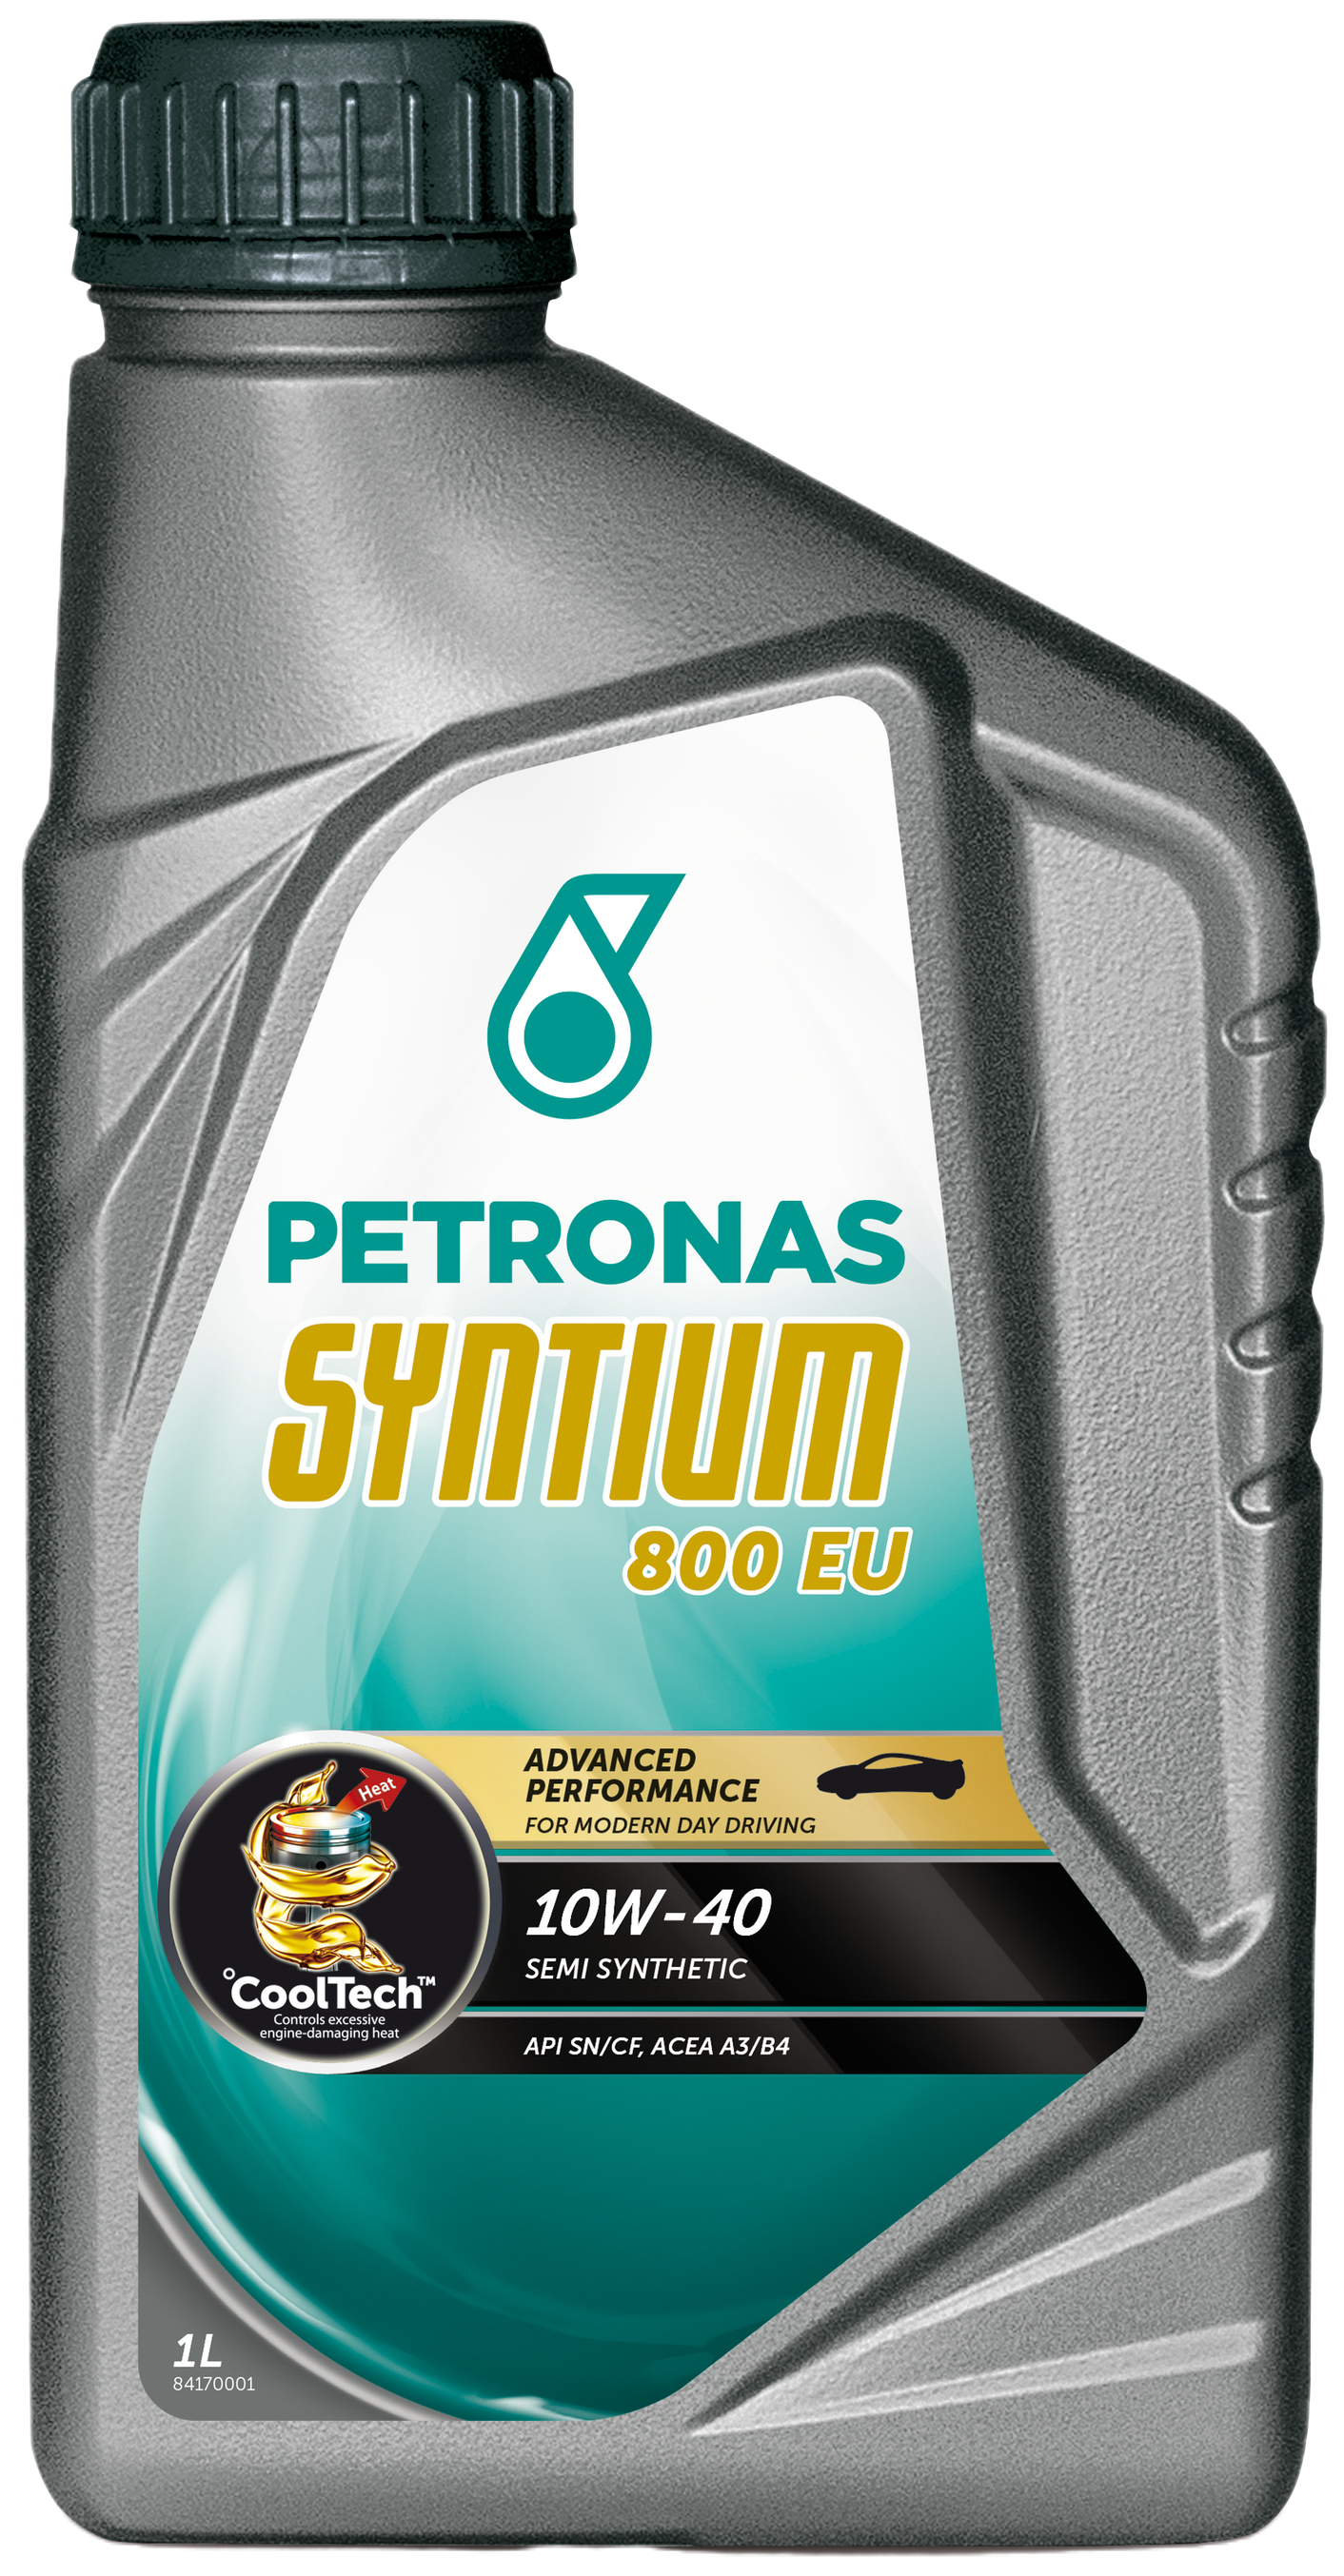 Petronas Syntium 800 EU 10W-40, 1 lt